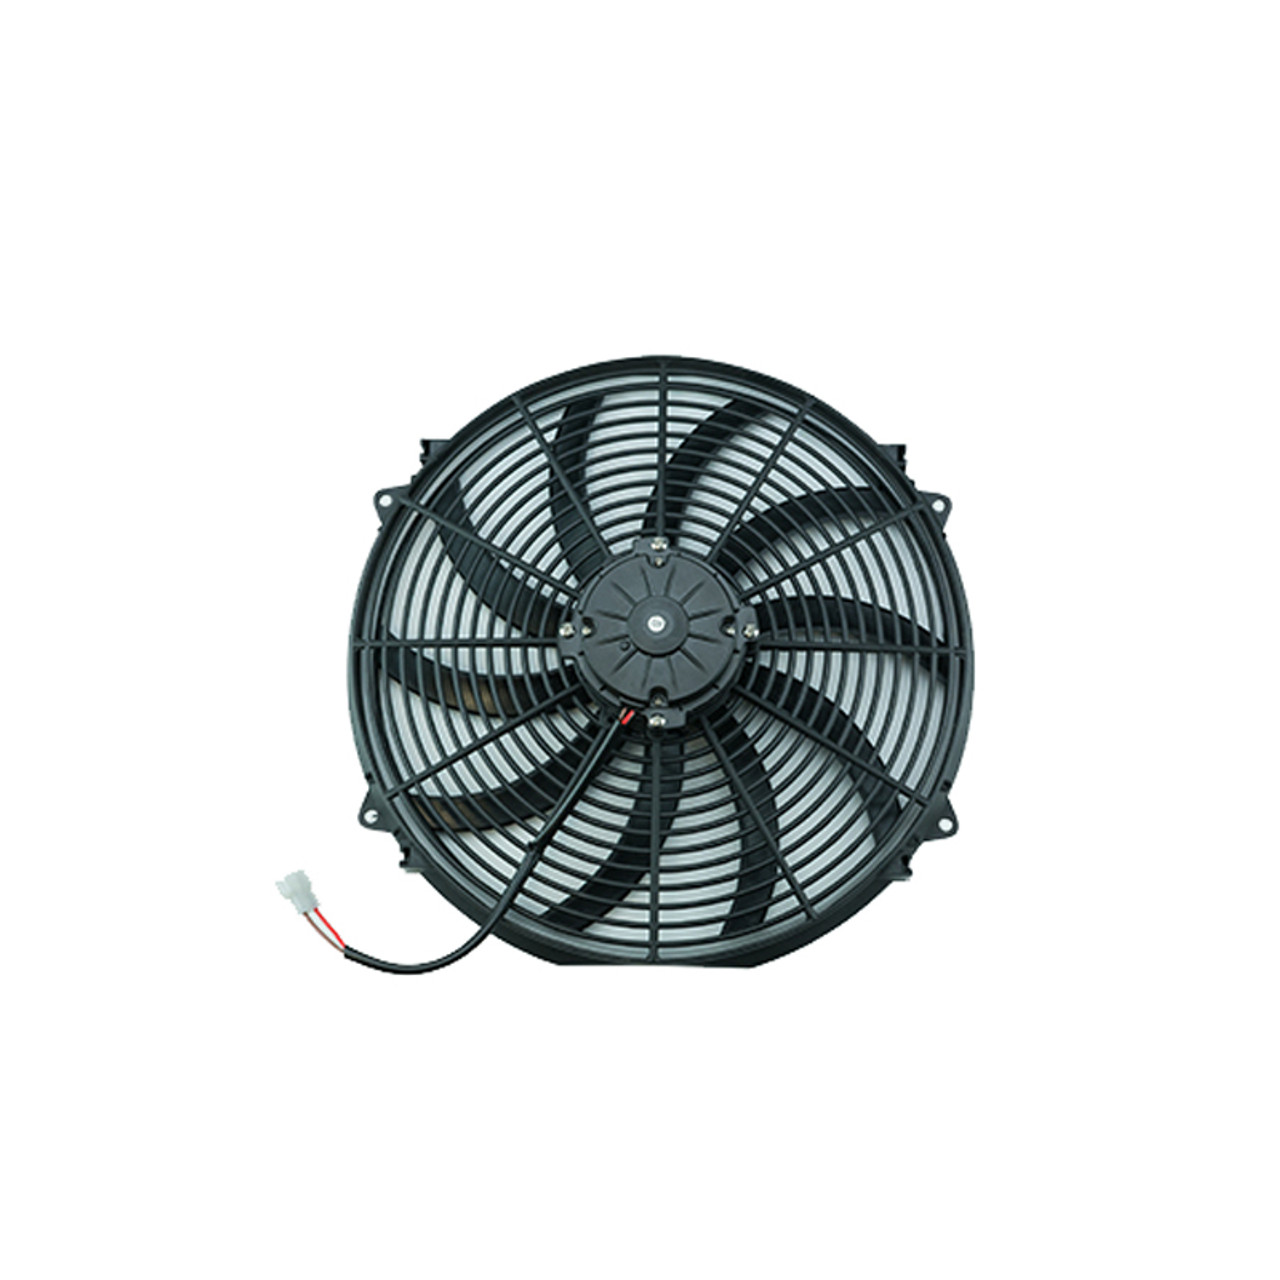 12 Inch Electric Radiato r Fan